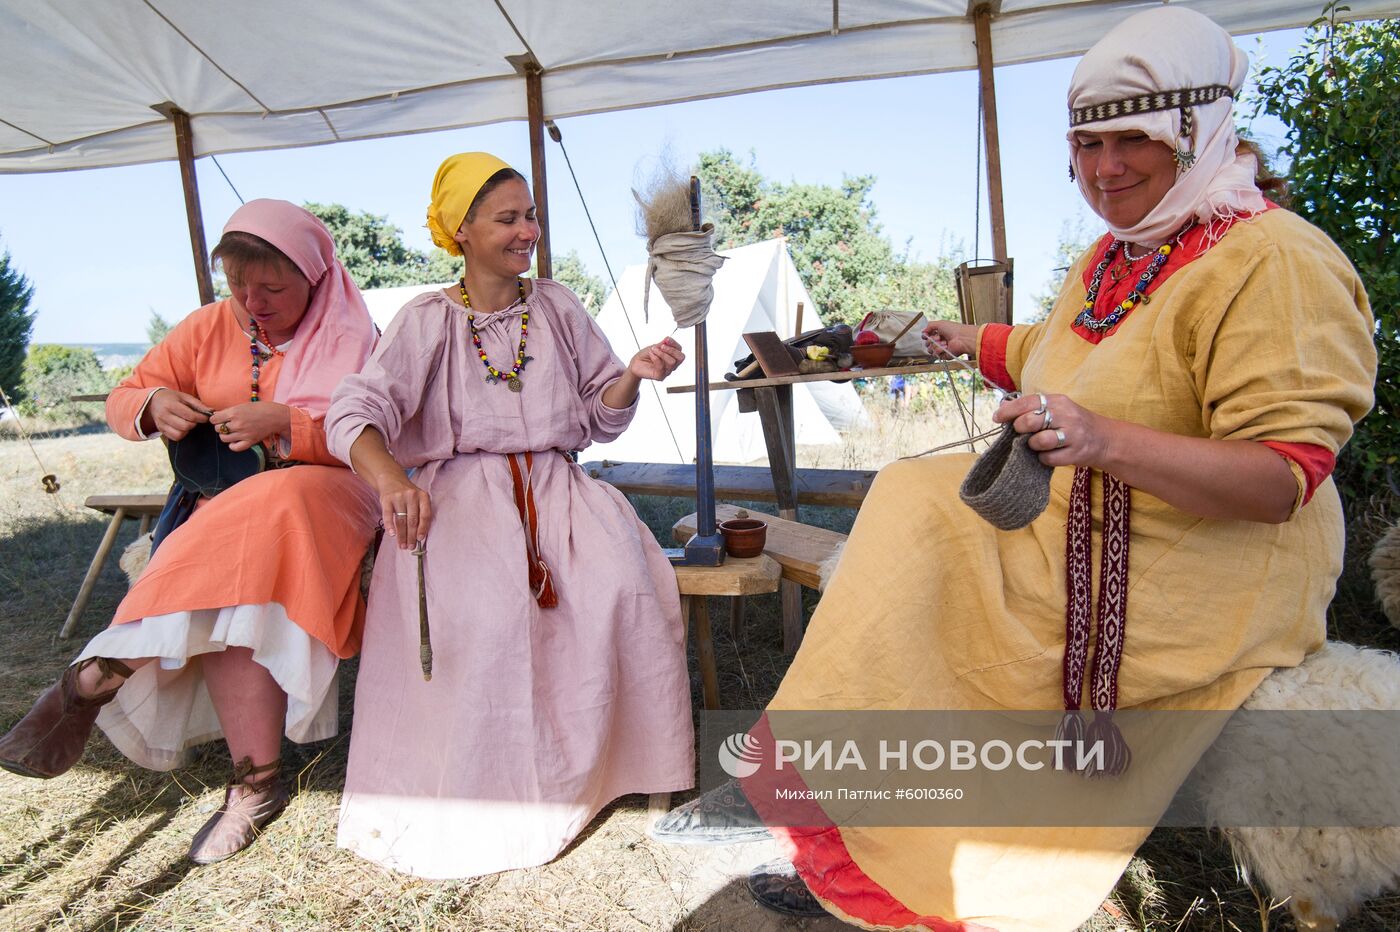 VI Крымский военно-исторический фестиваль